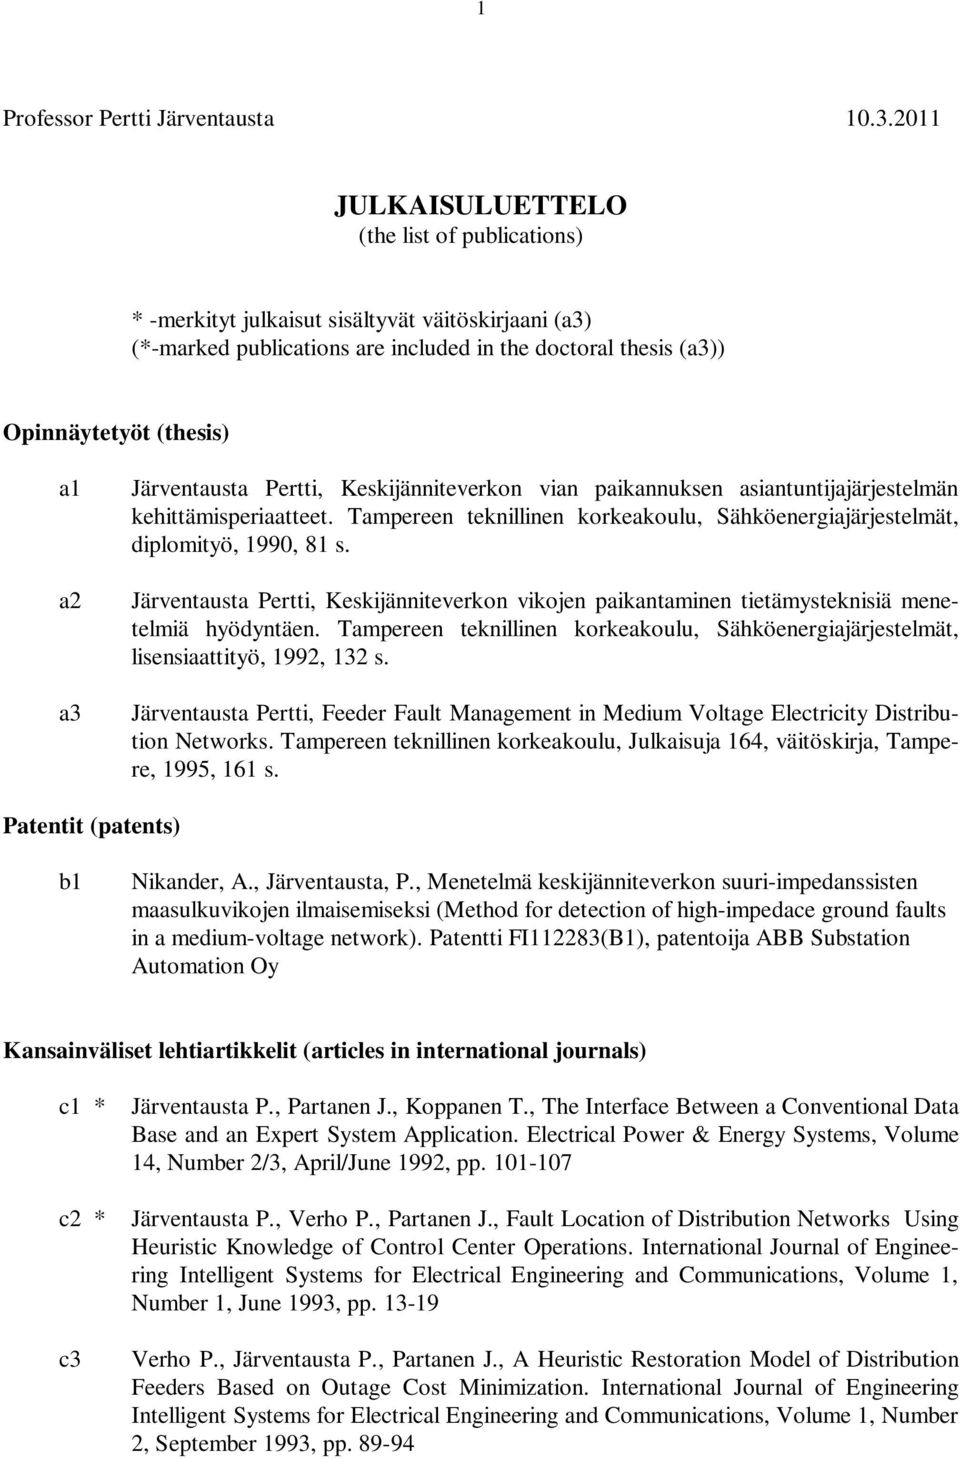 Järventausta Pertti, Keskijänniteverkon vian paikannuksen asiantuntijajärjestelmän kehittämisperiaatteet. Tampereen teknillinen korkeakoulu, Sähköenergiajärjestelmät, diplomityö, 1990, 81 s.